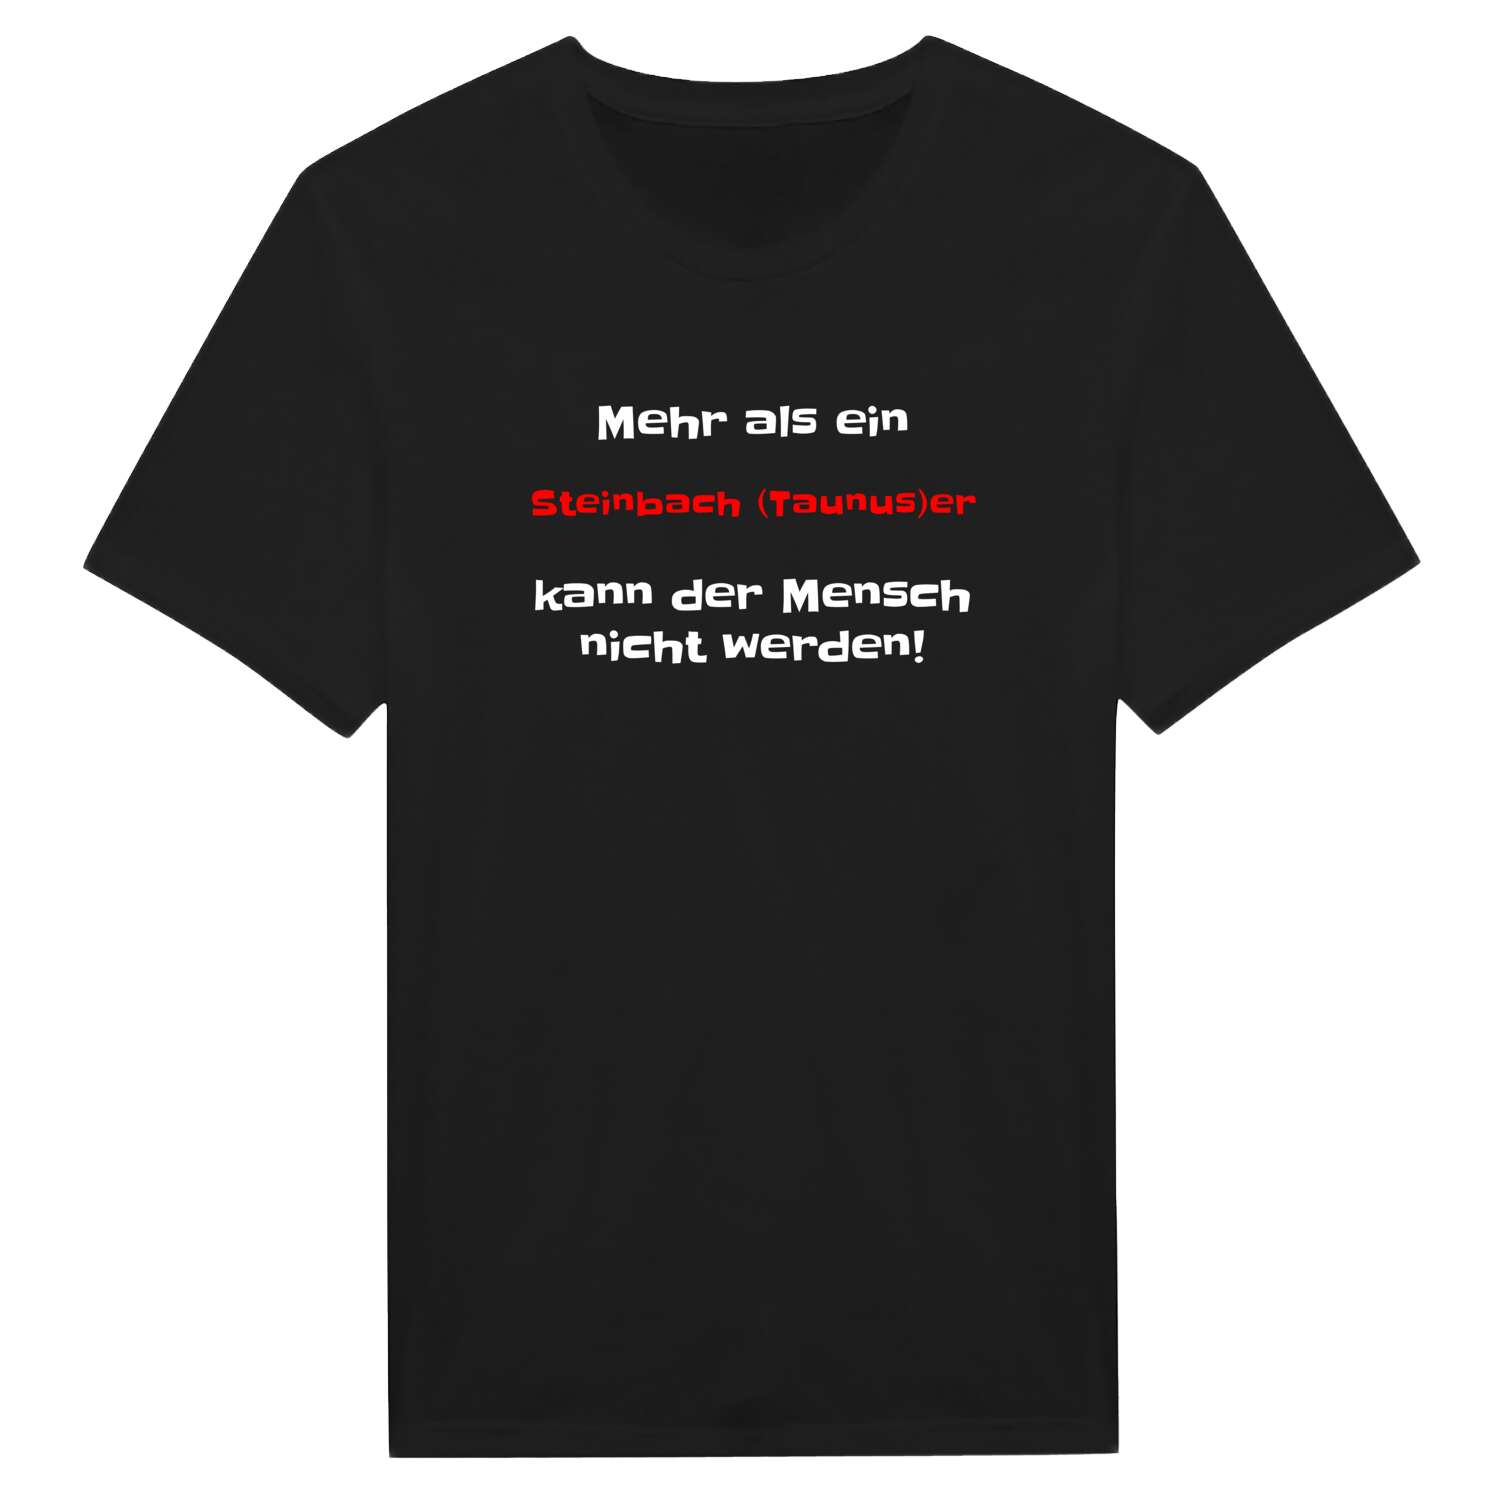 Steinbach (Taunus) T-Shirt »Mehr als ein«